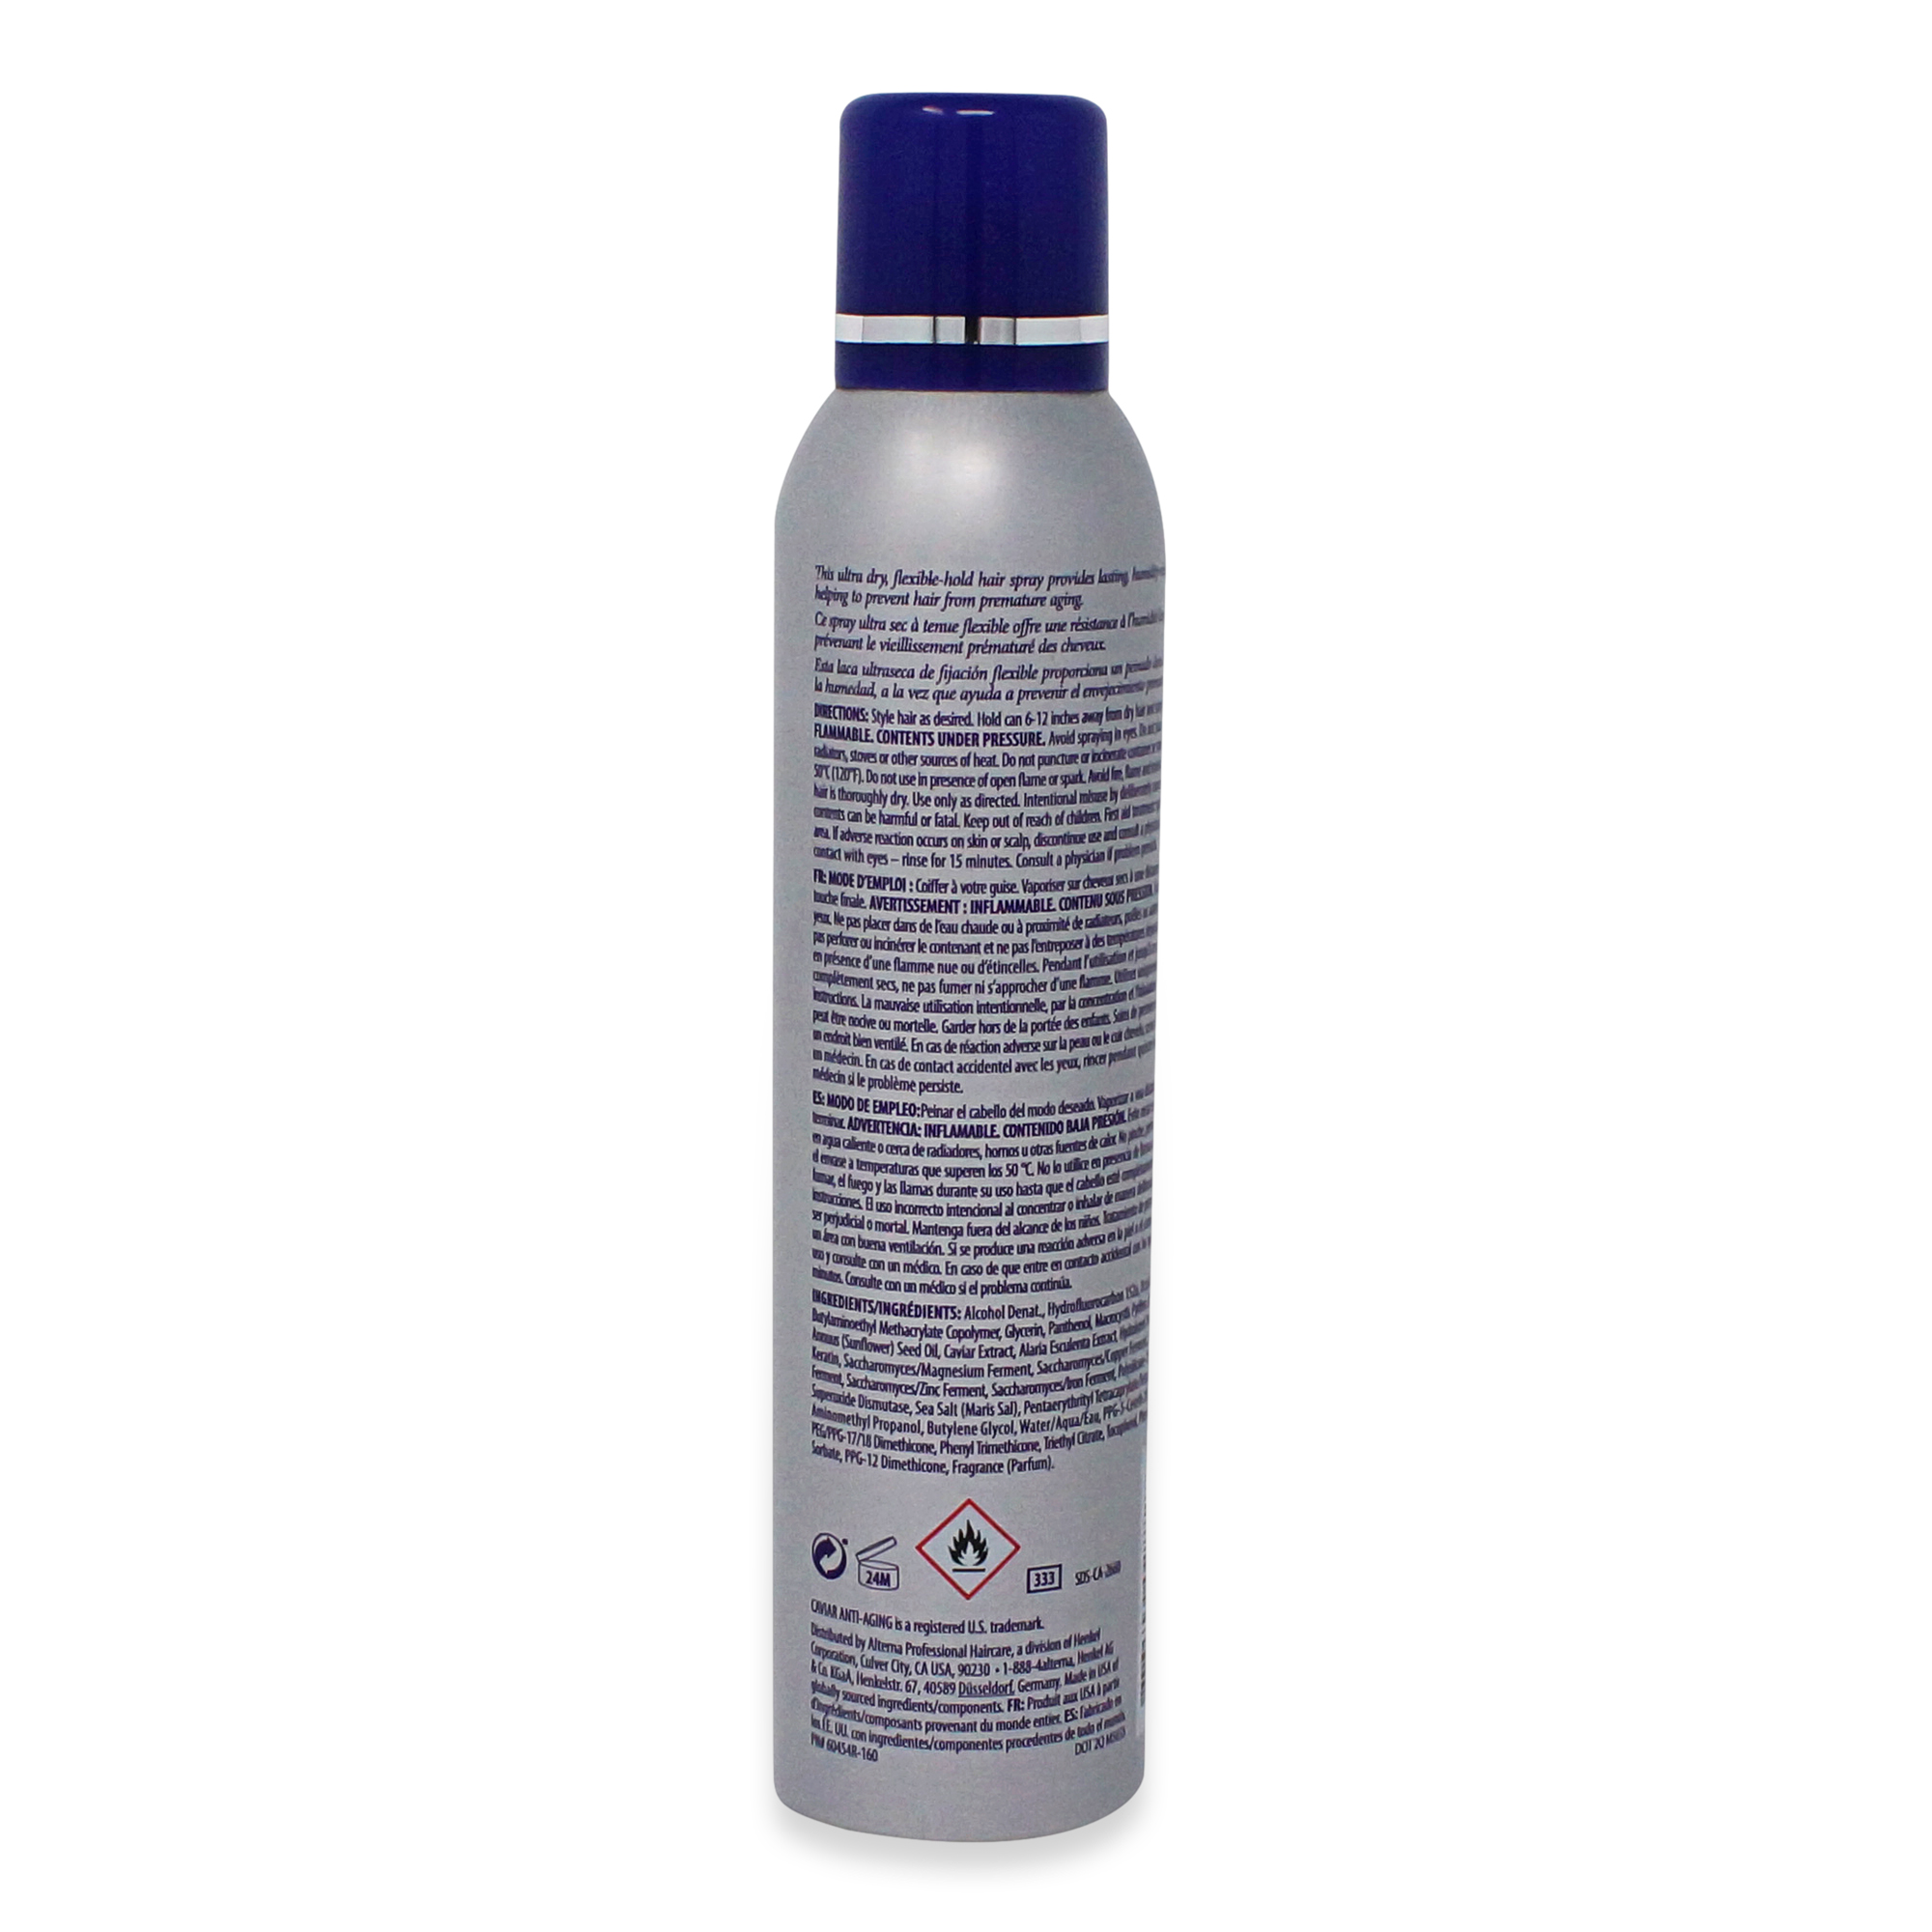 Alterna Caviar Anti-Aging Working Hair Spray, 7.4 oz. - image 3 of 3